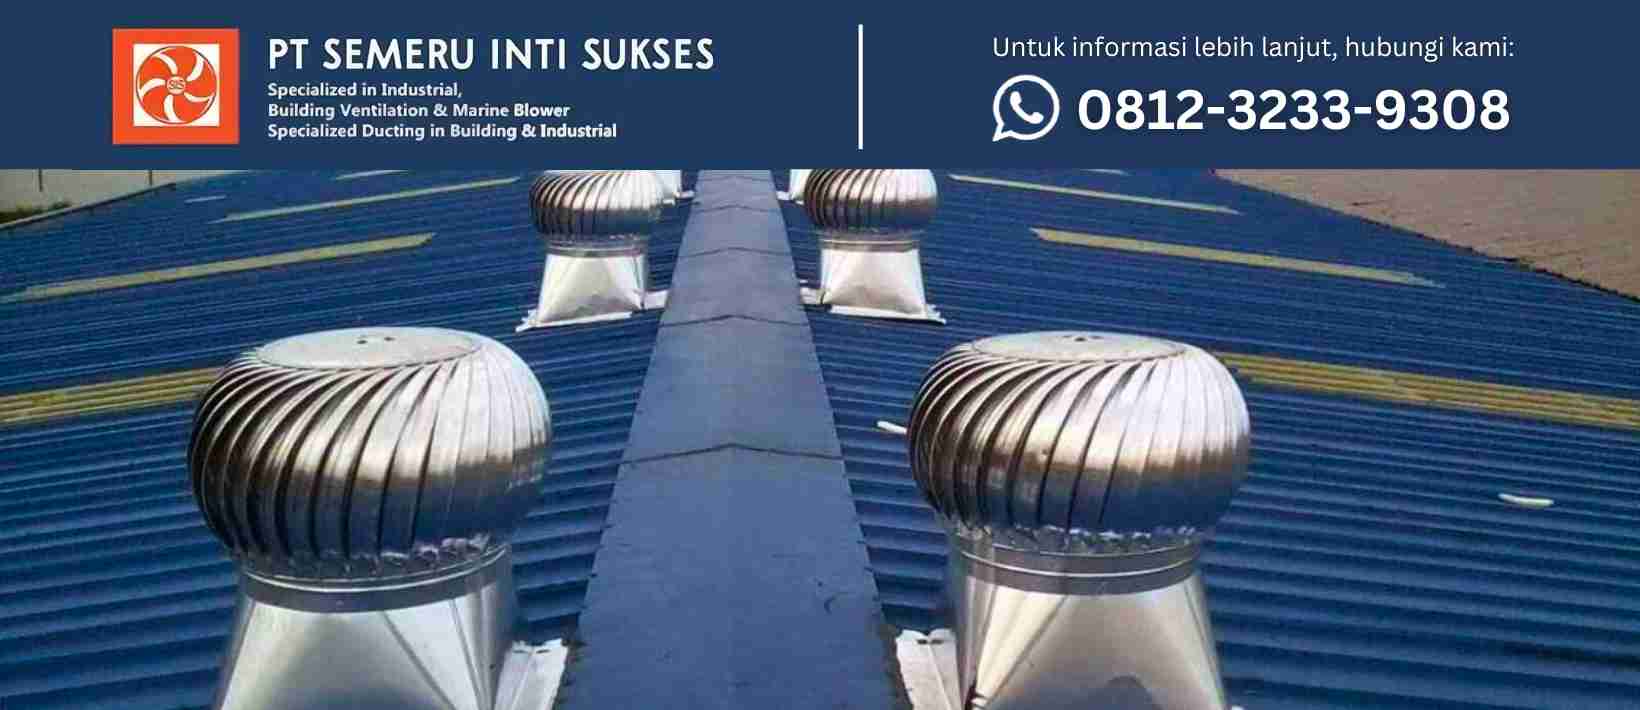 Jasa Pasang Turbin Ventilator di Surabaya